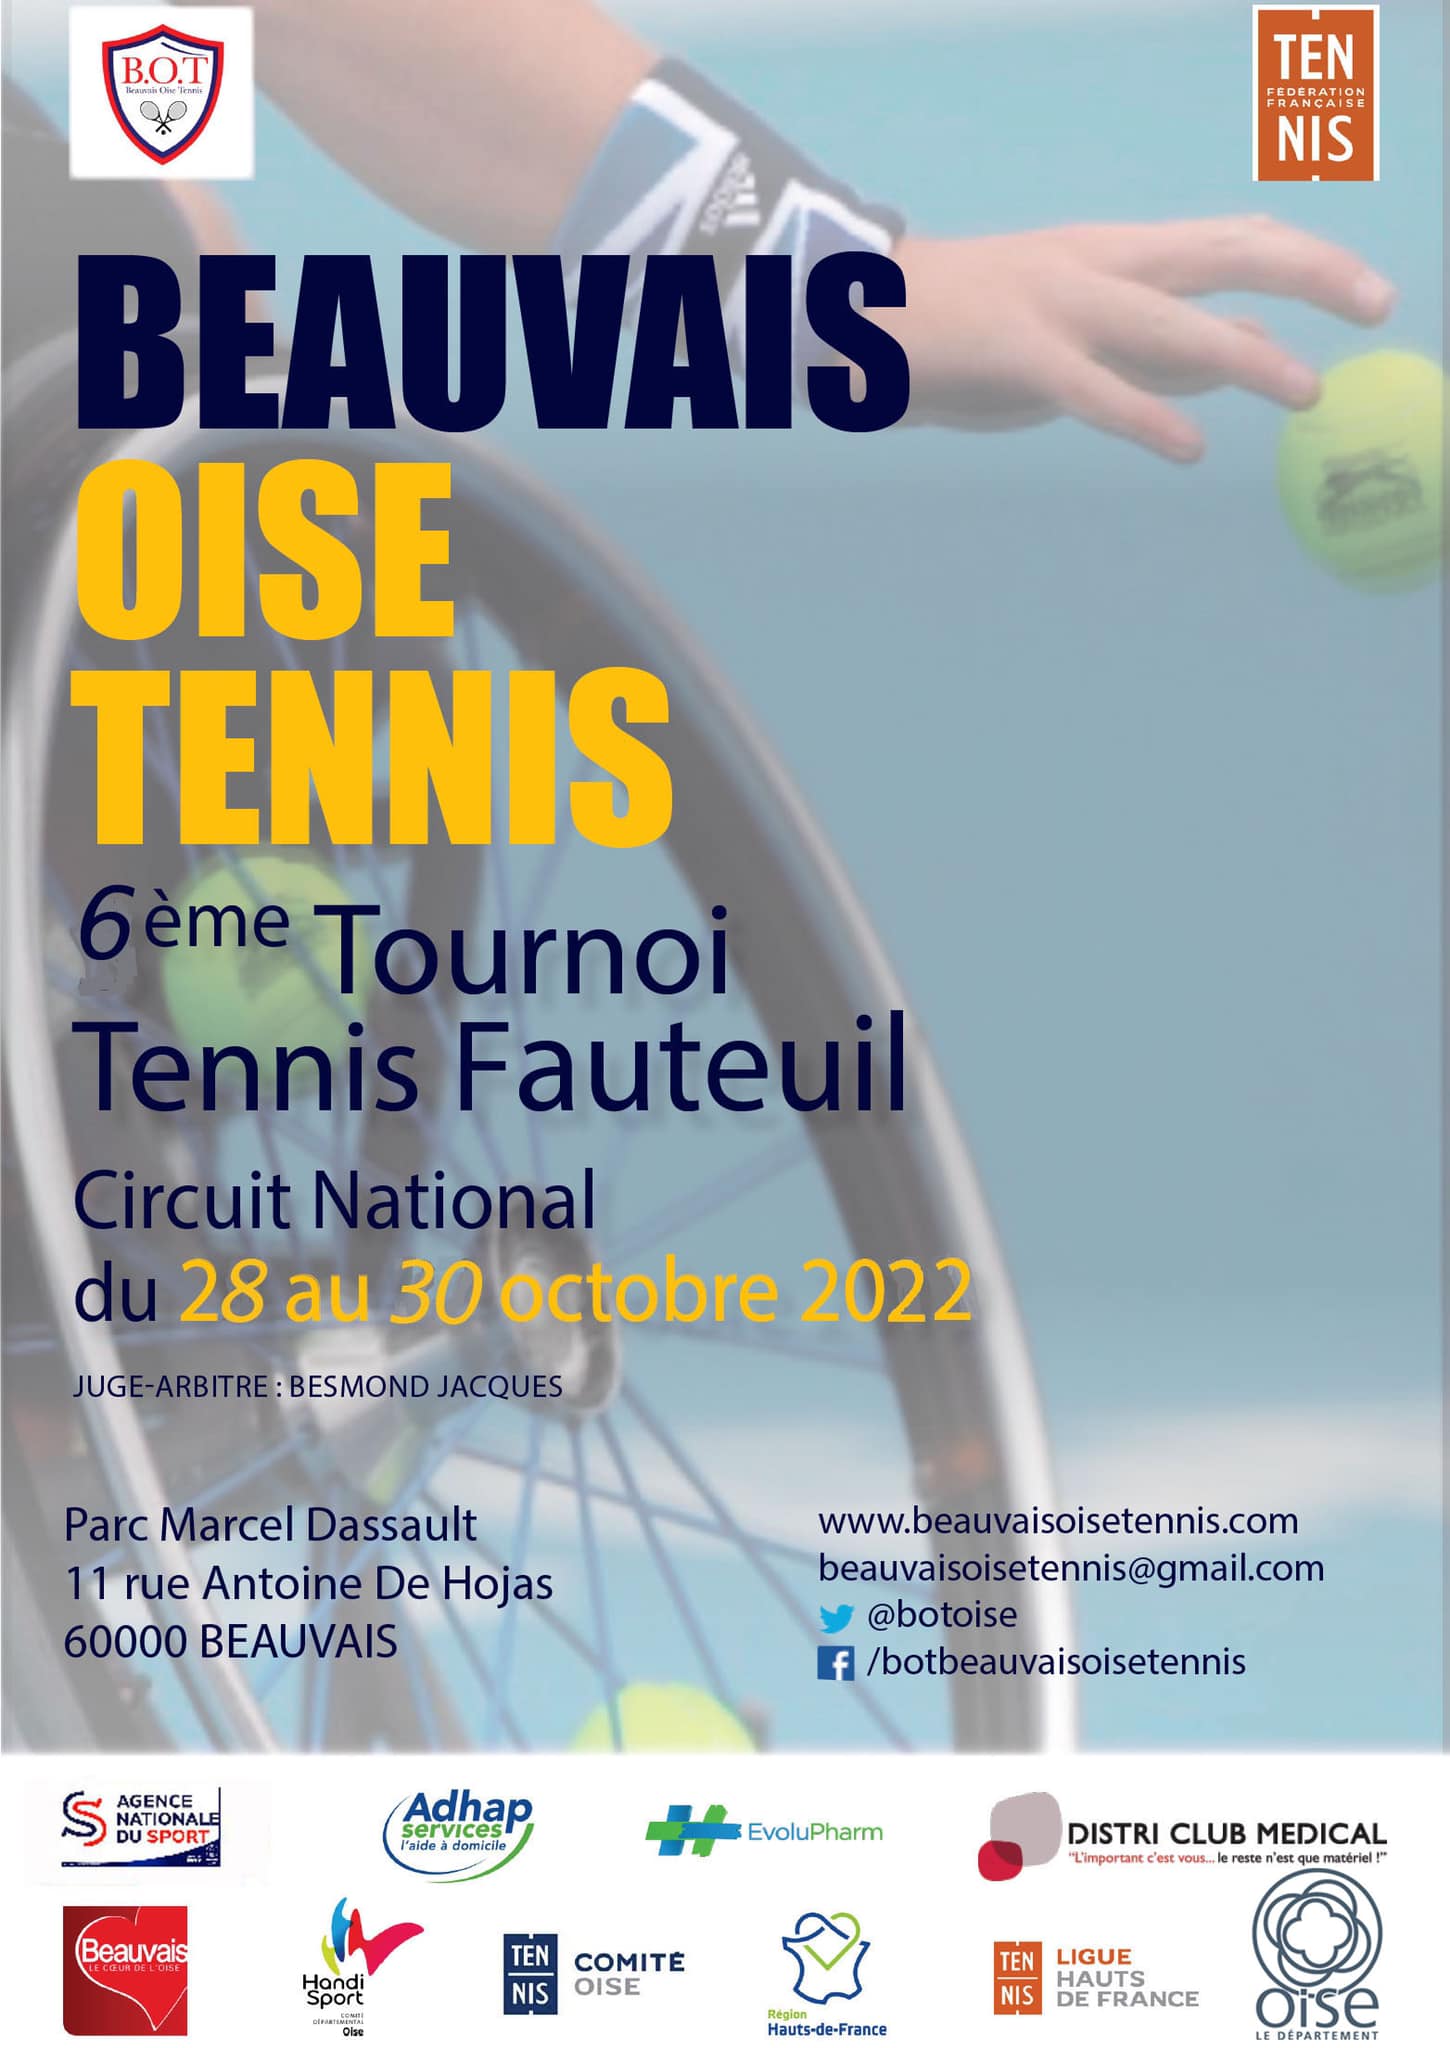 [ Tournoi ] Tournoi Tennis Fauteuil du BOT